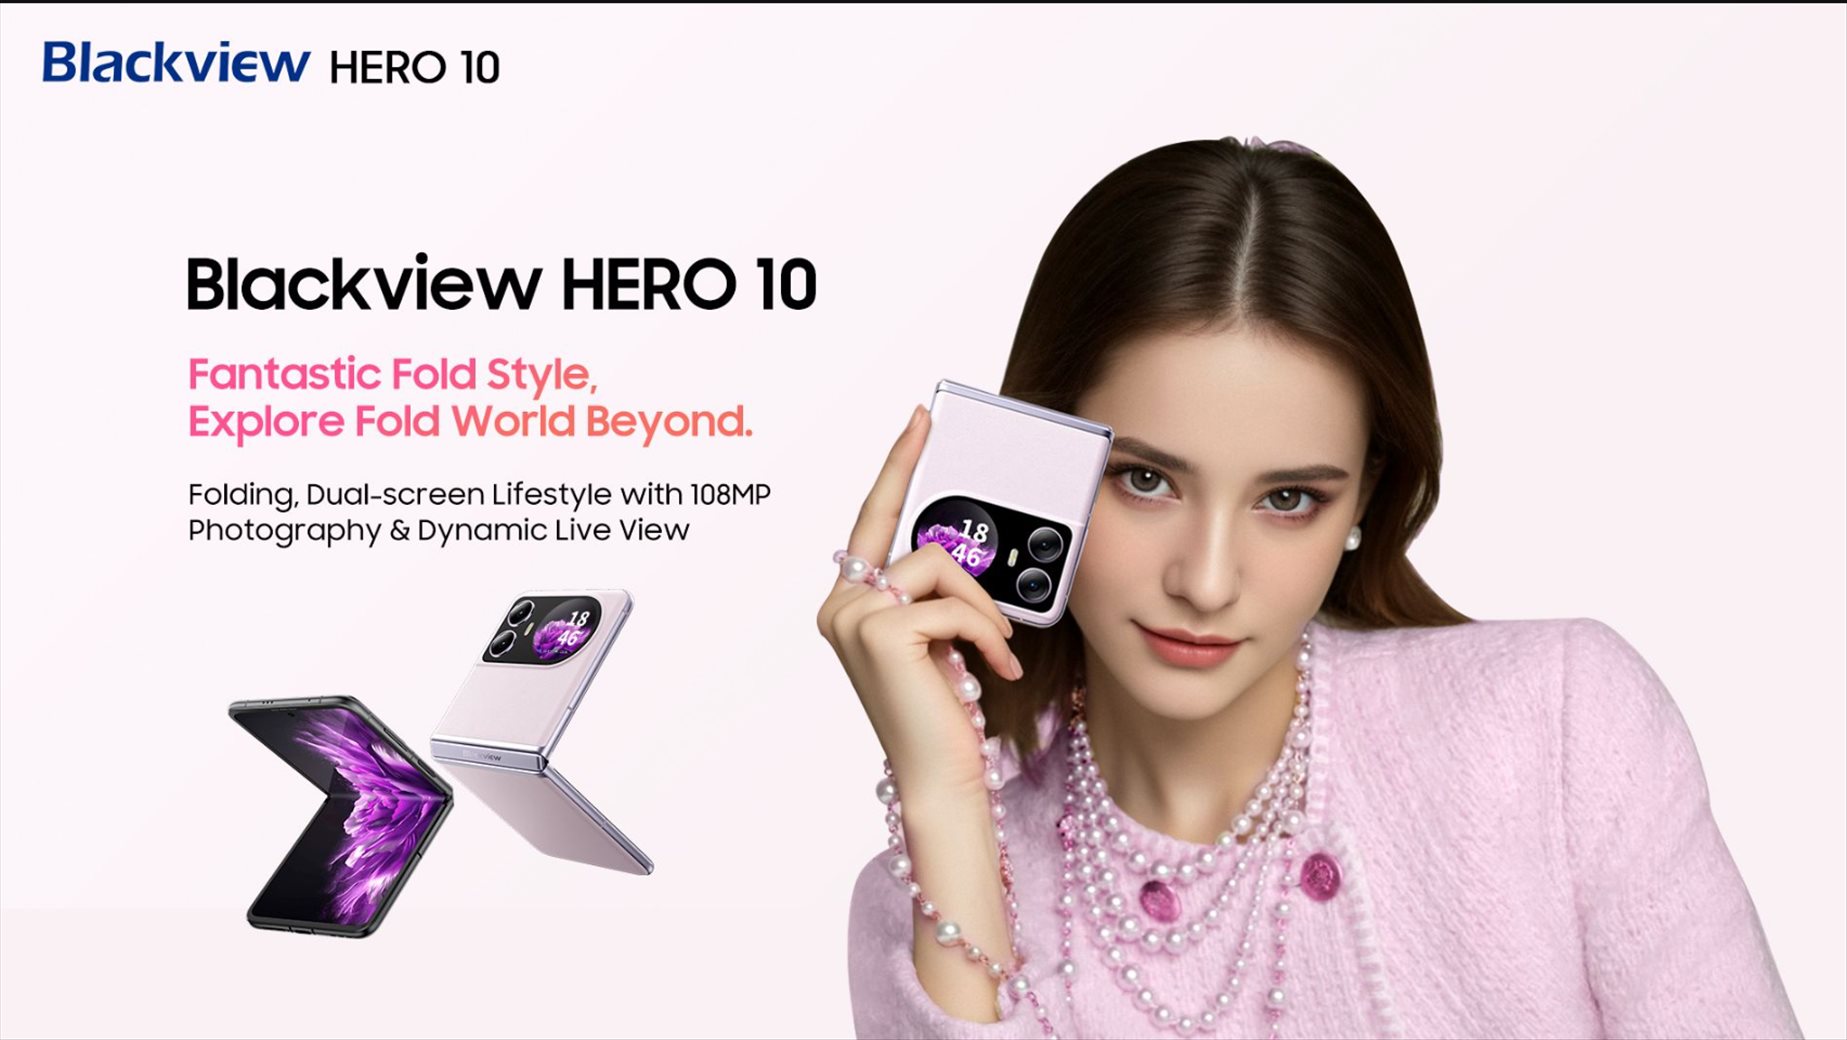 Blackview HERO 10 smartphone